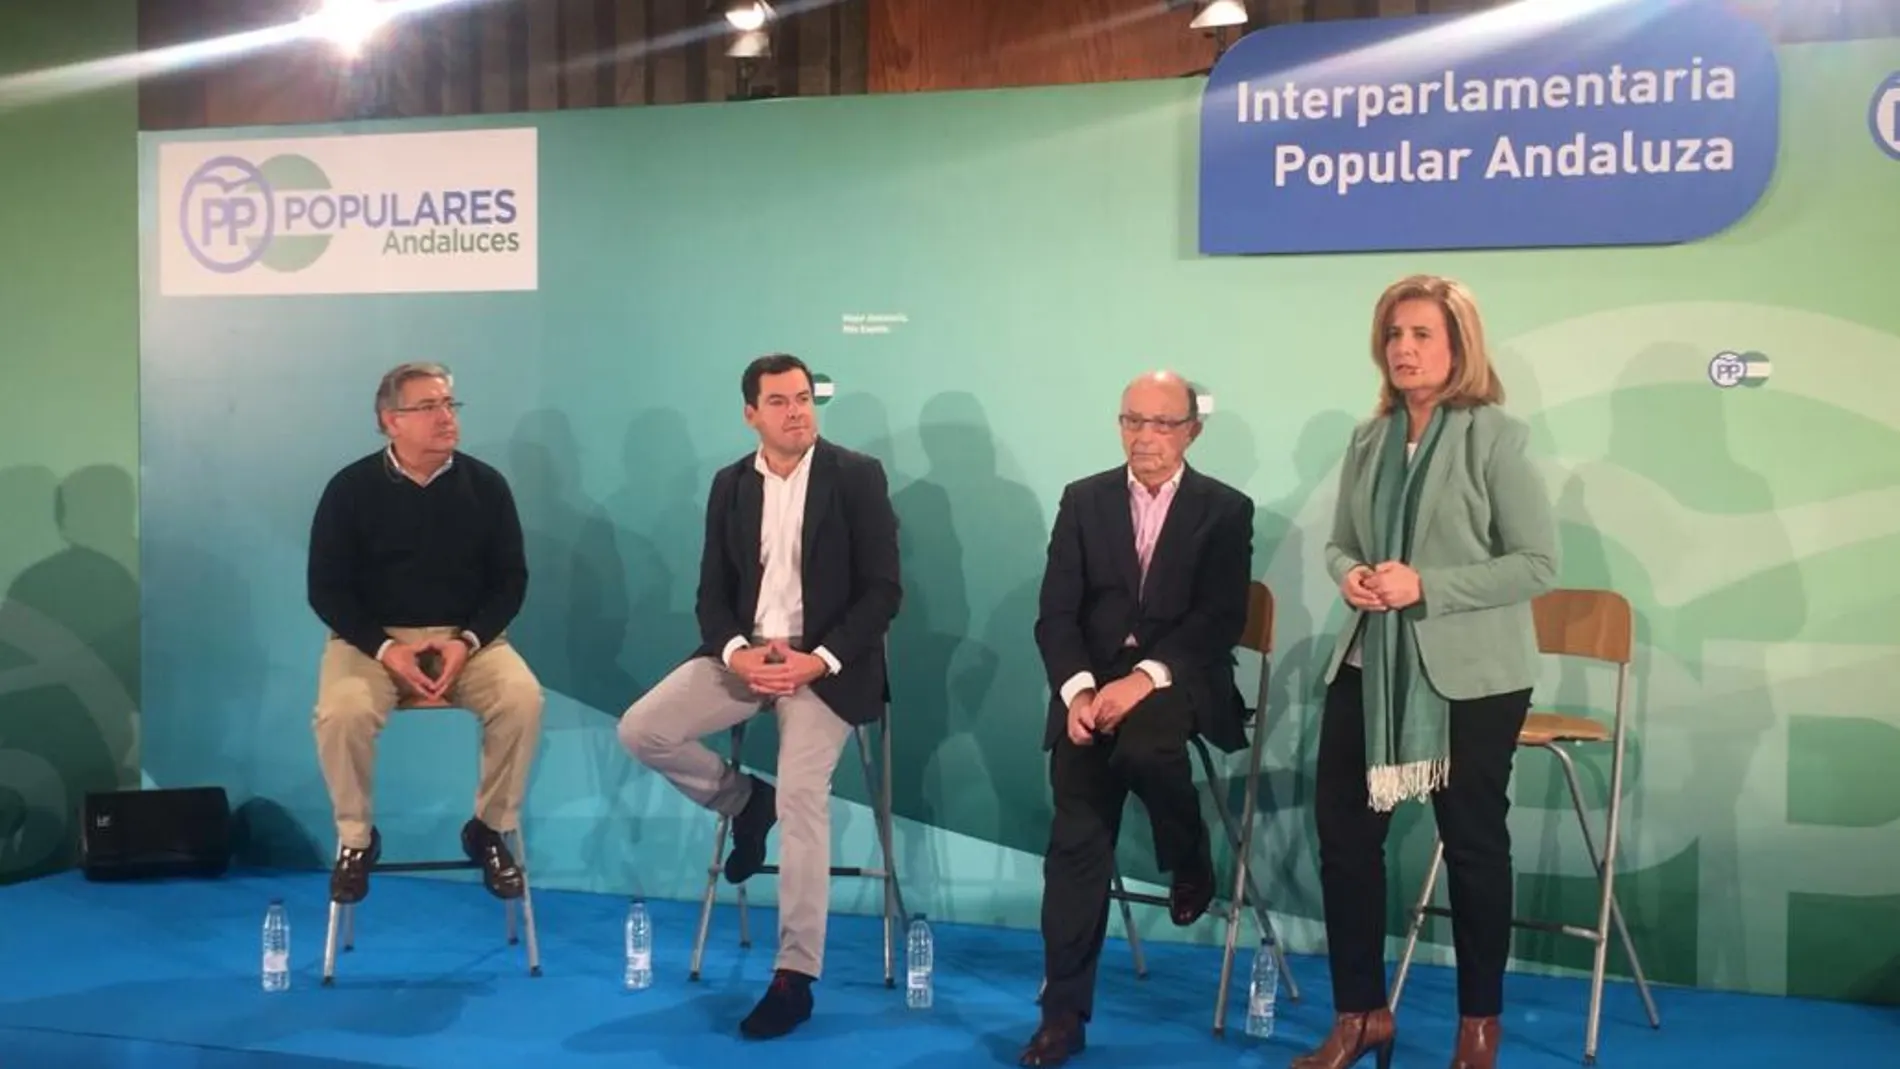 Los ministros andaluces del Gobierno de España, Cristóbal Montoro, Fátima Báñez y Juan Ignacio Zoido